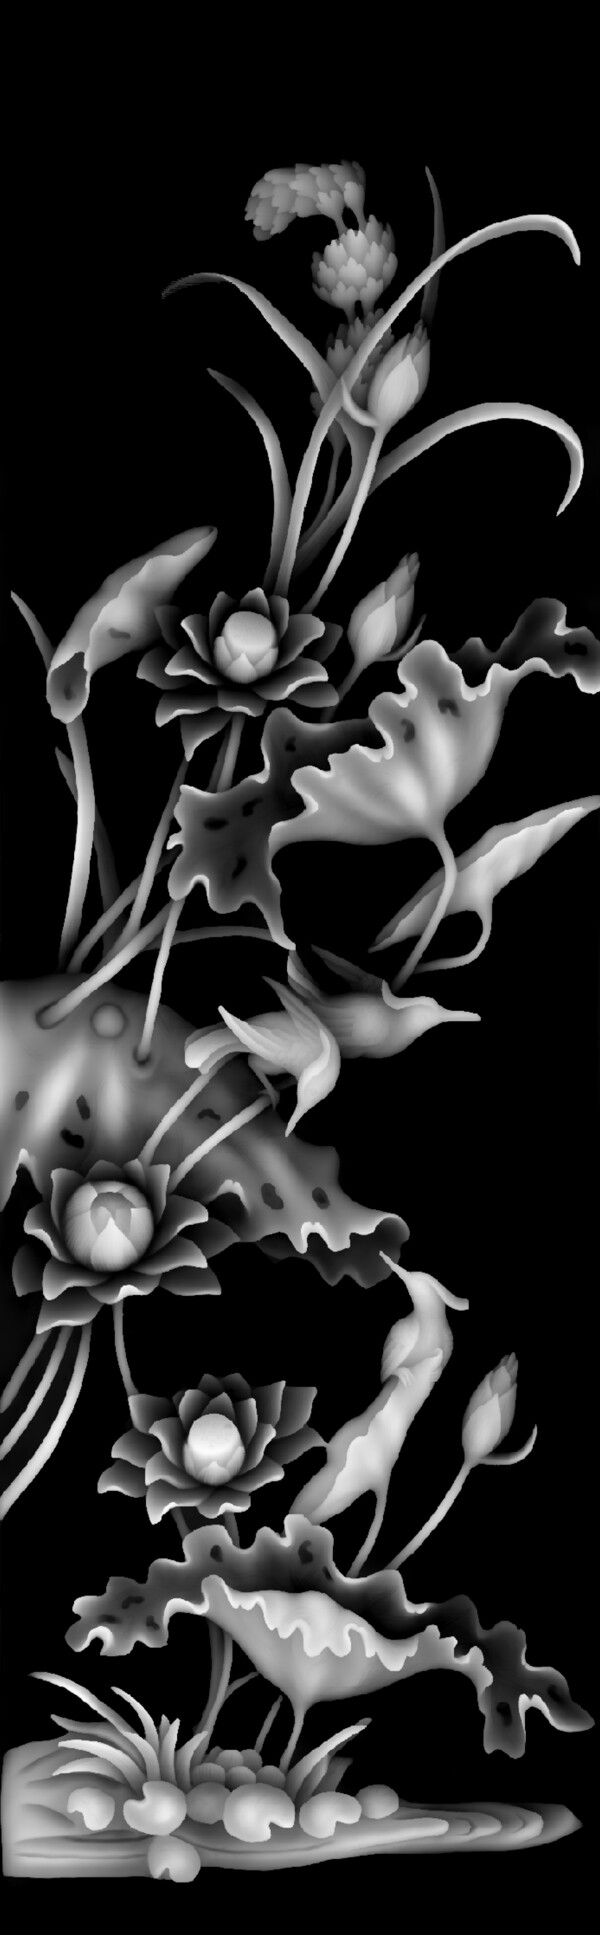 牡丹花花瓶浮雕灰度图